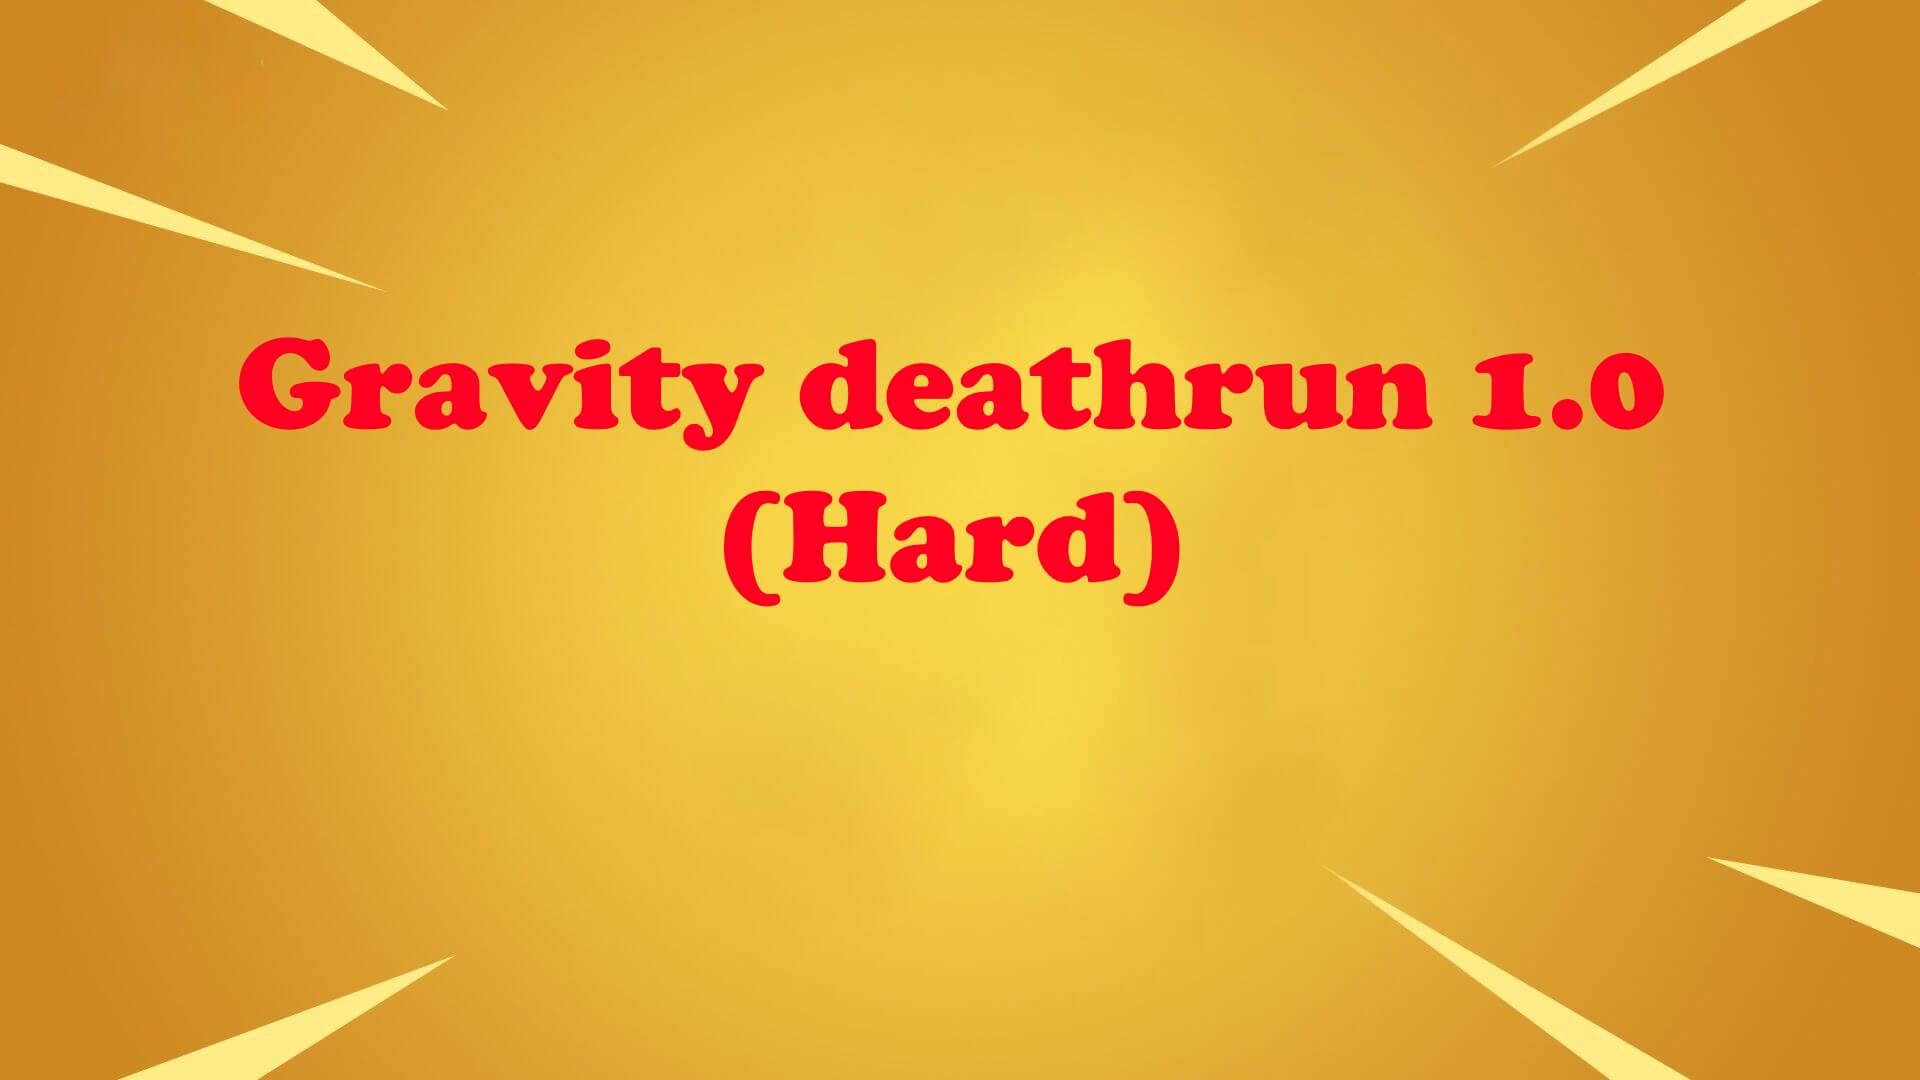 GRAVITY DEATHRUN 1.0 (HARD)